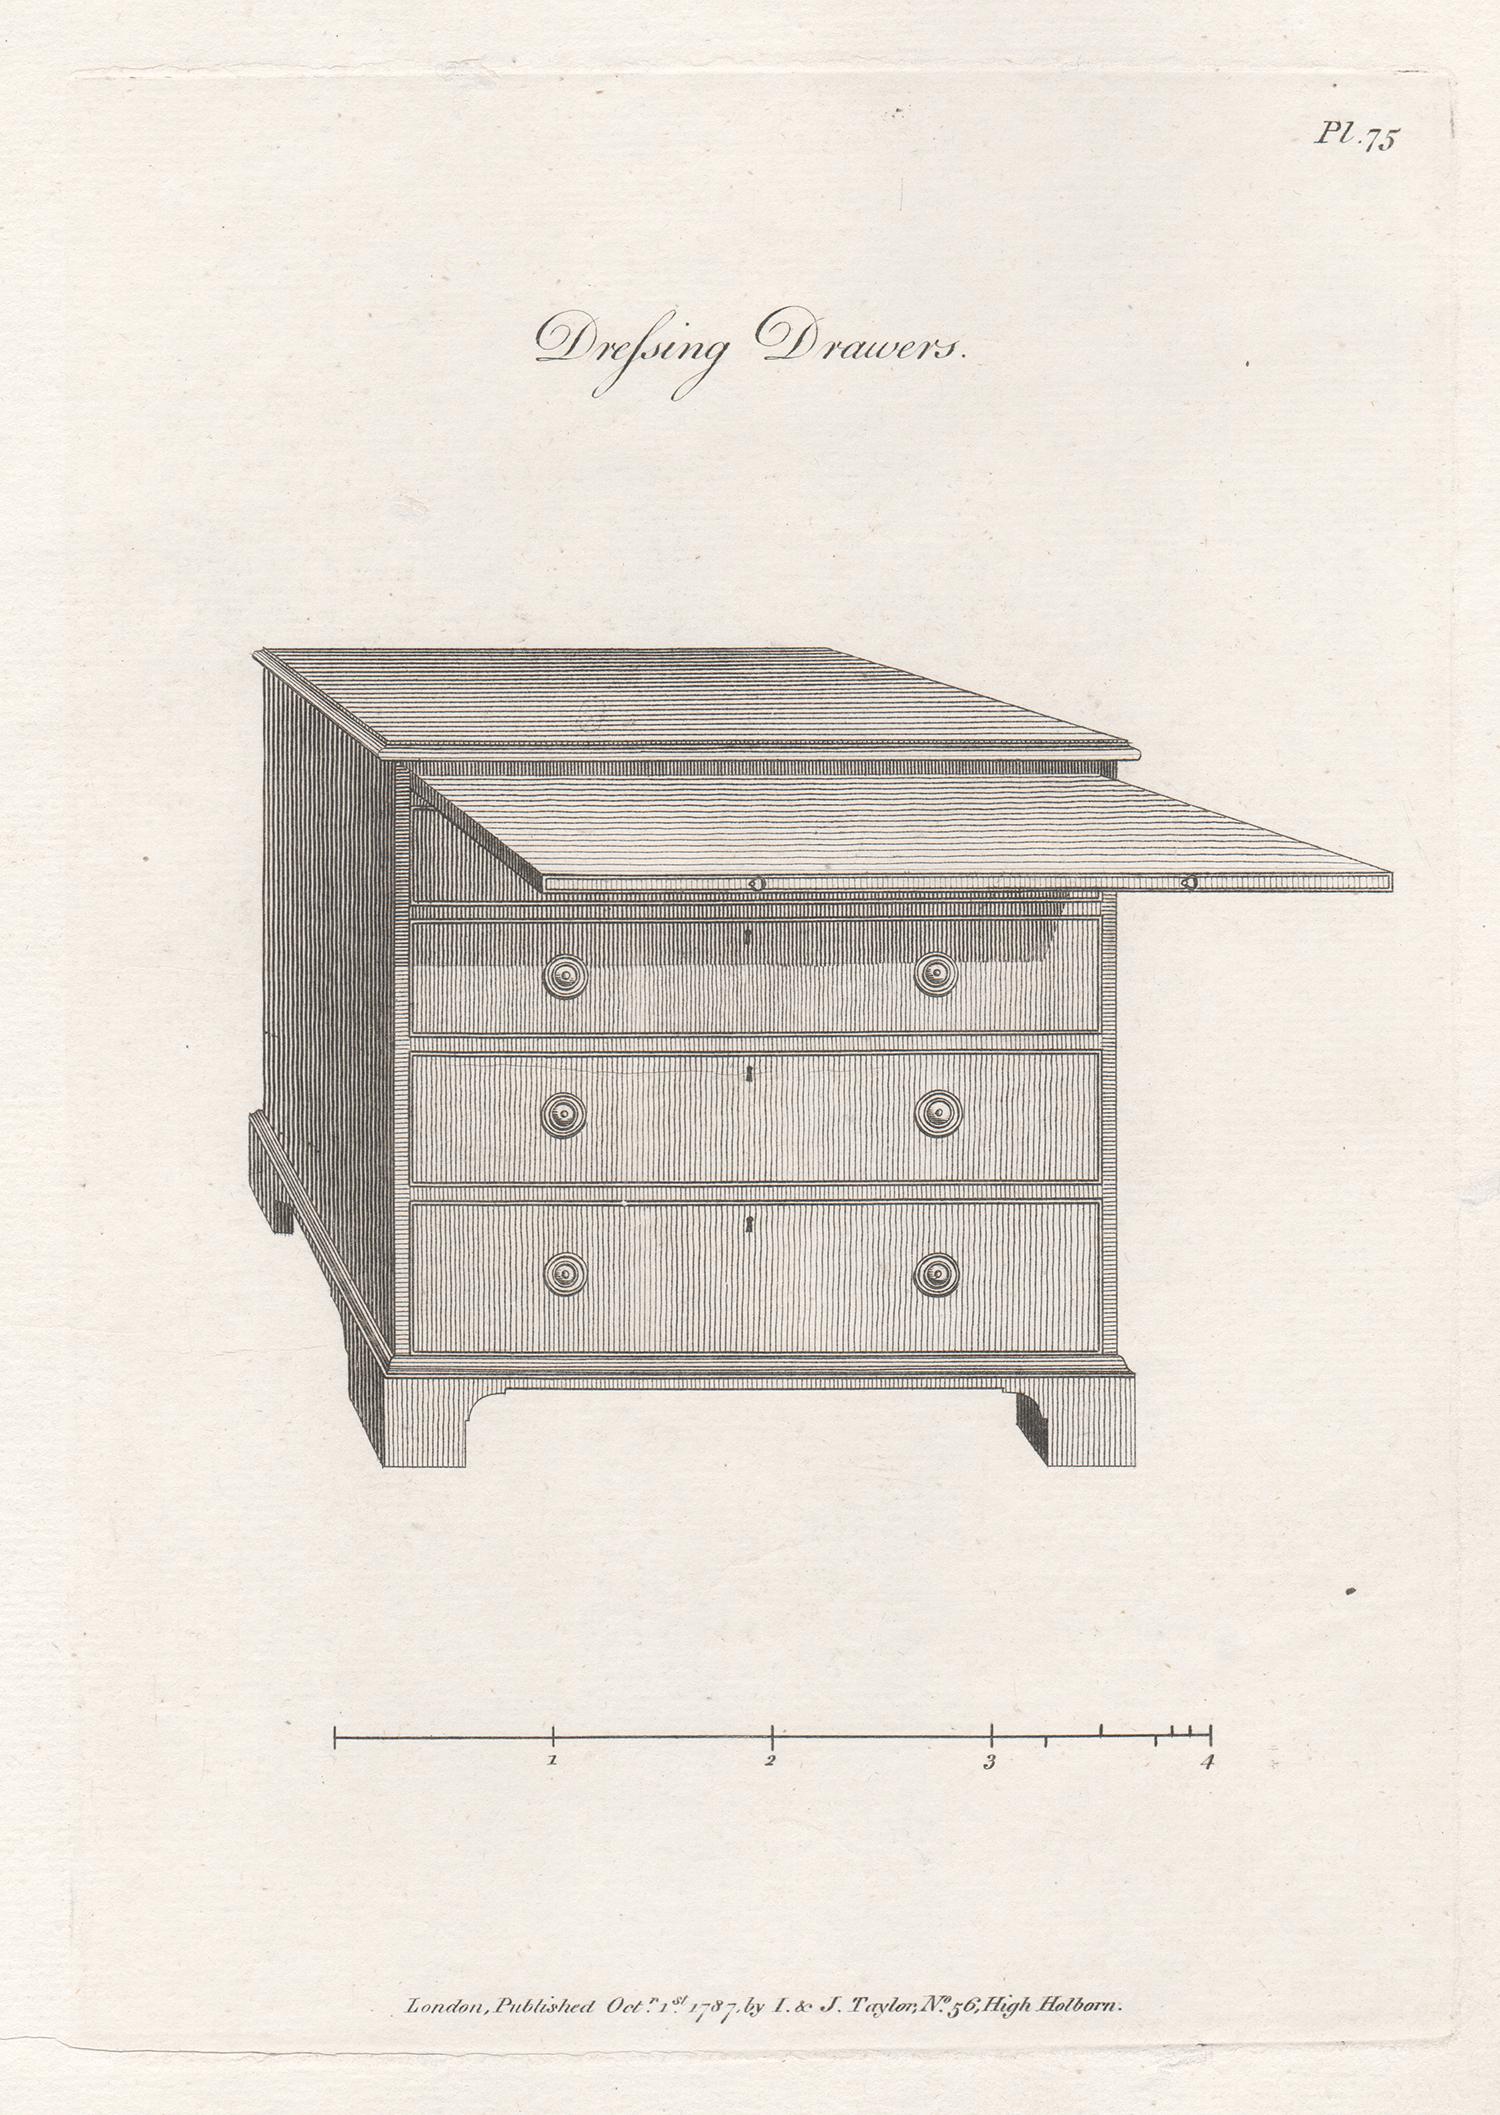 Dressing Drawers, Hepplewhite Georgian furniture design engraving